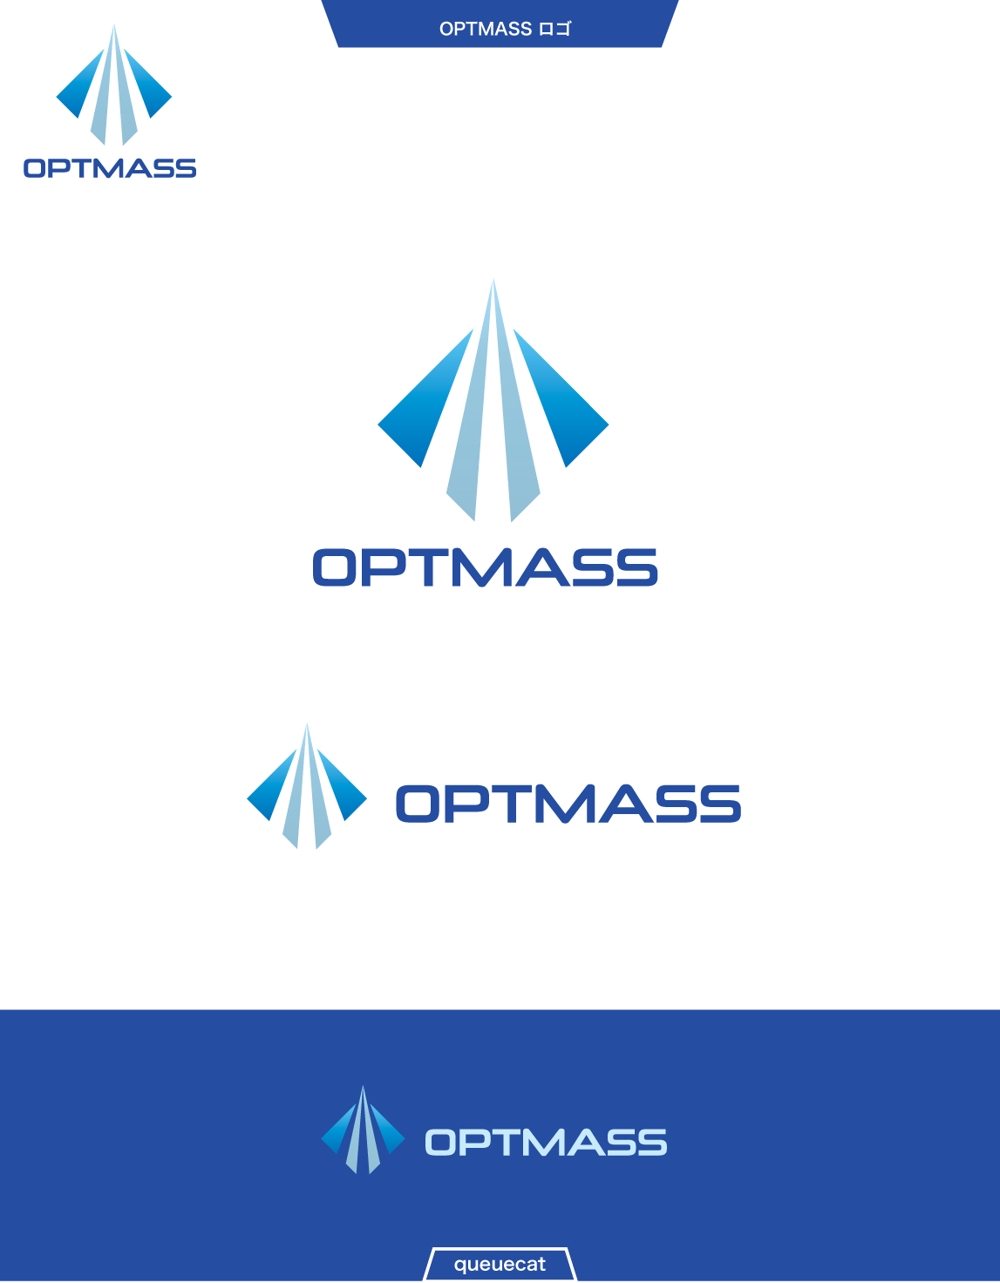 OPTMASS4_1.jpg